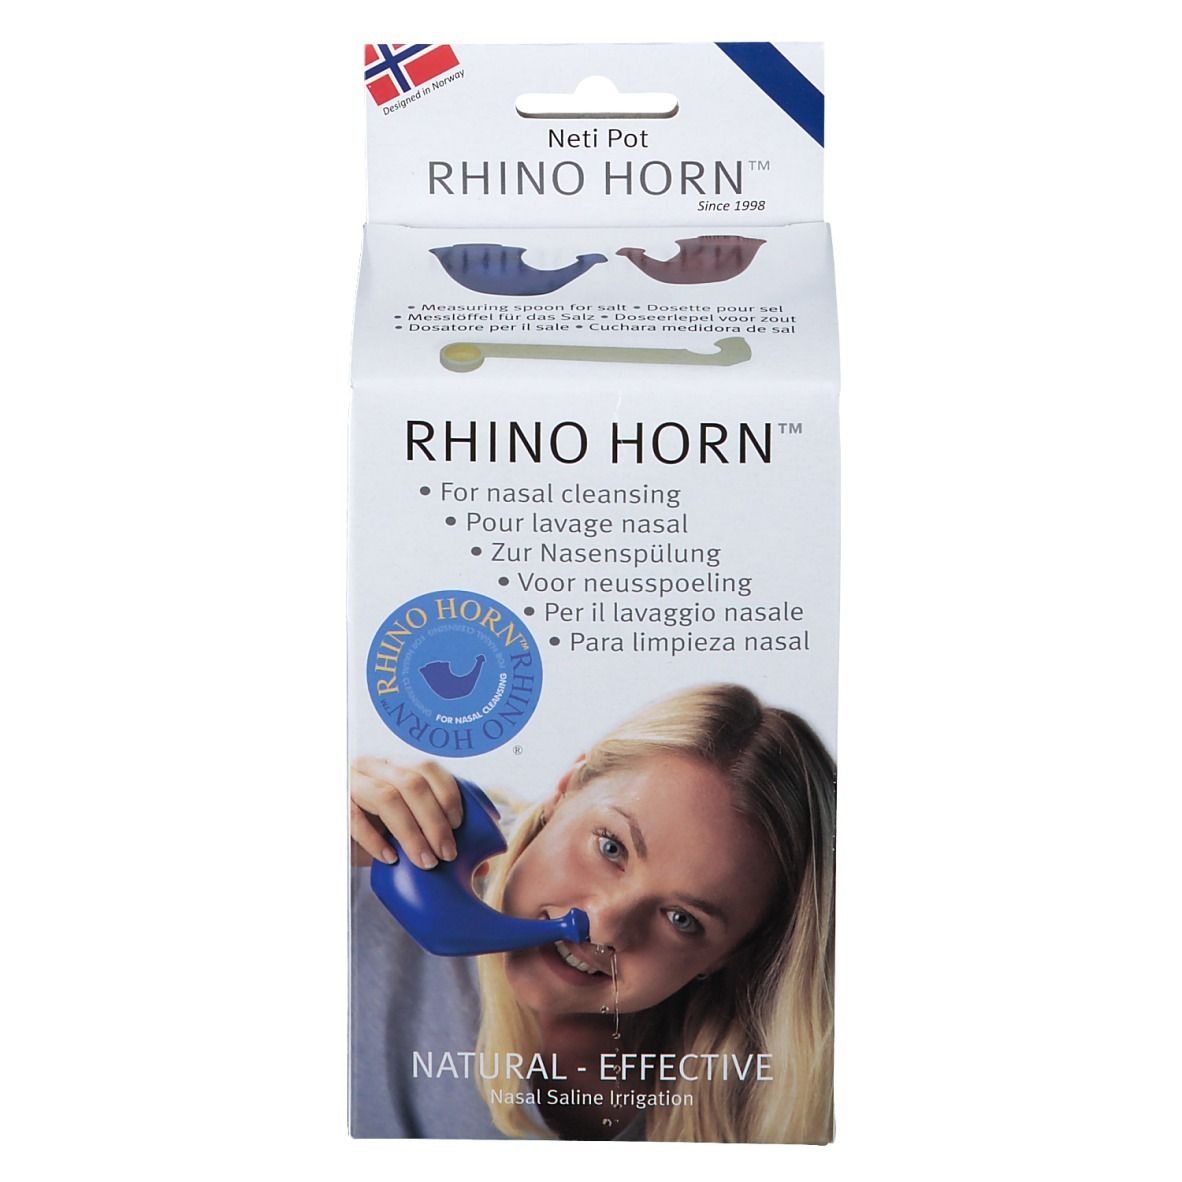 RHINO HORN™ blau